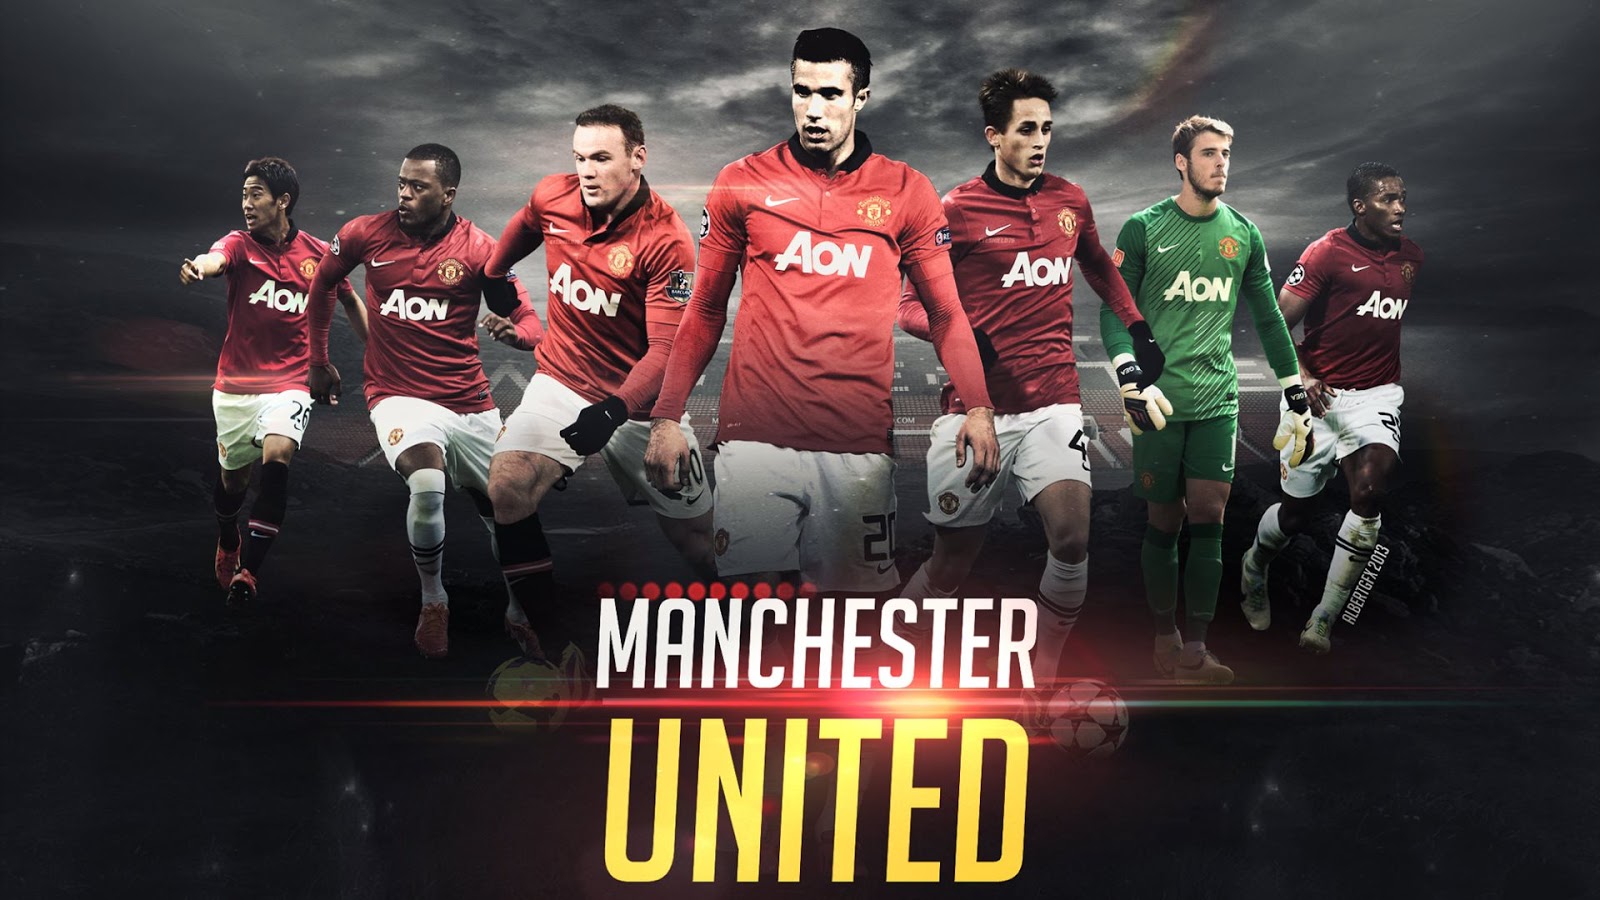 Man United Football Club 44